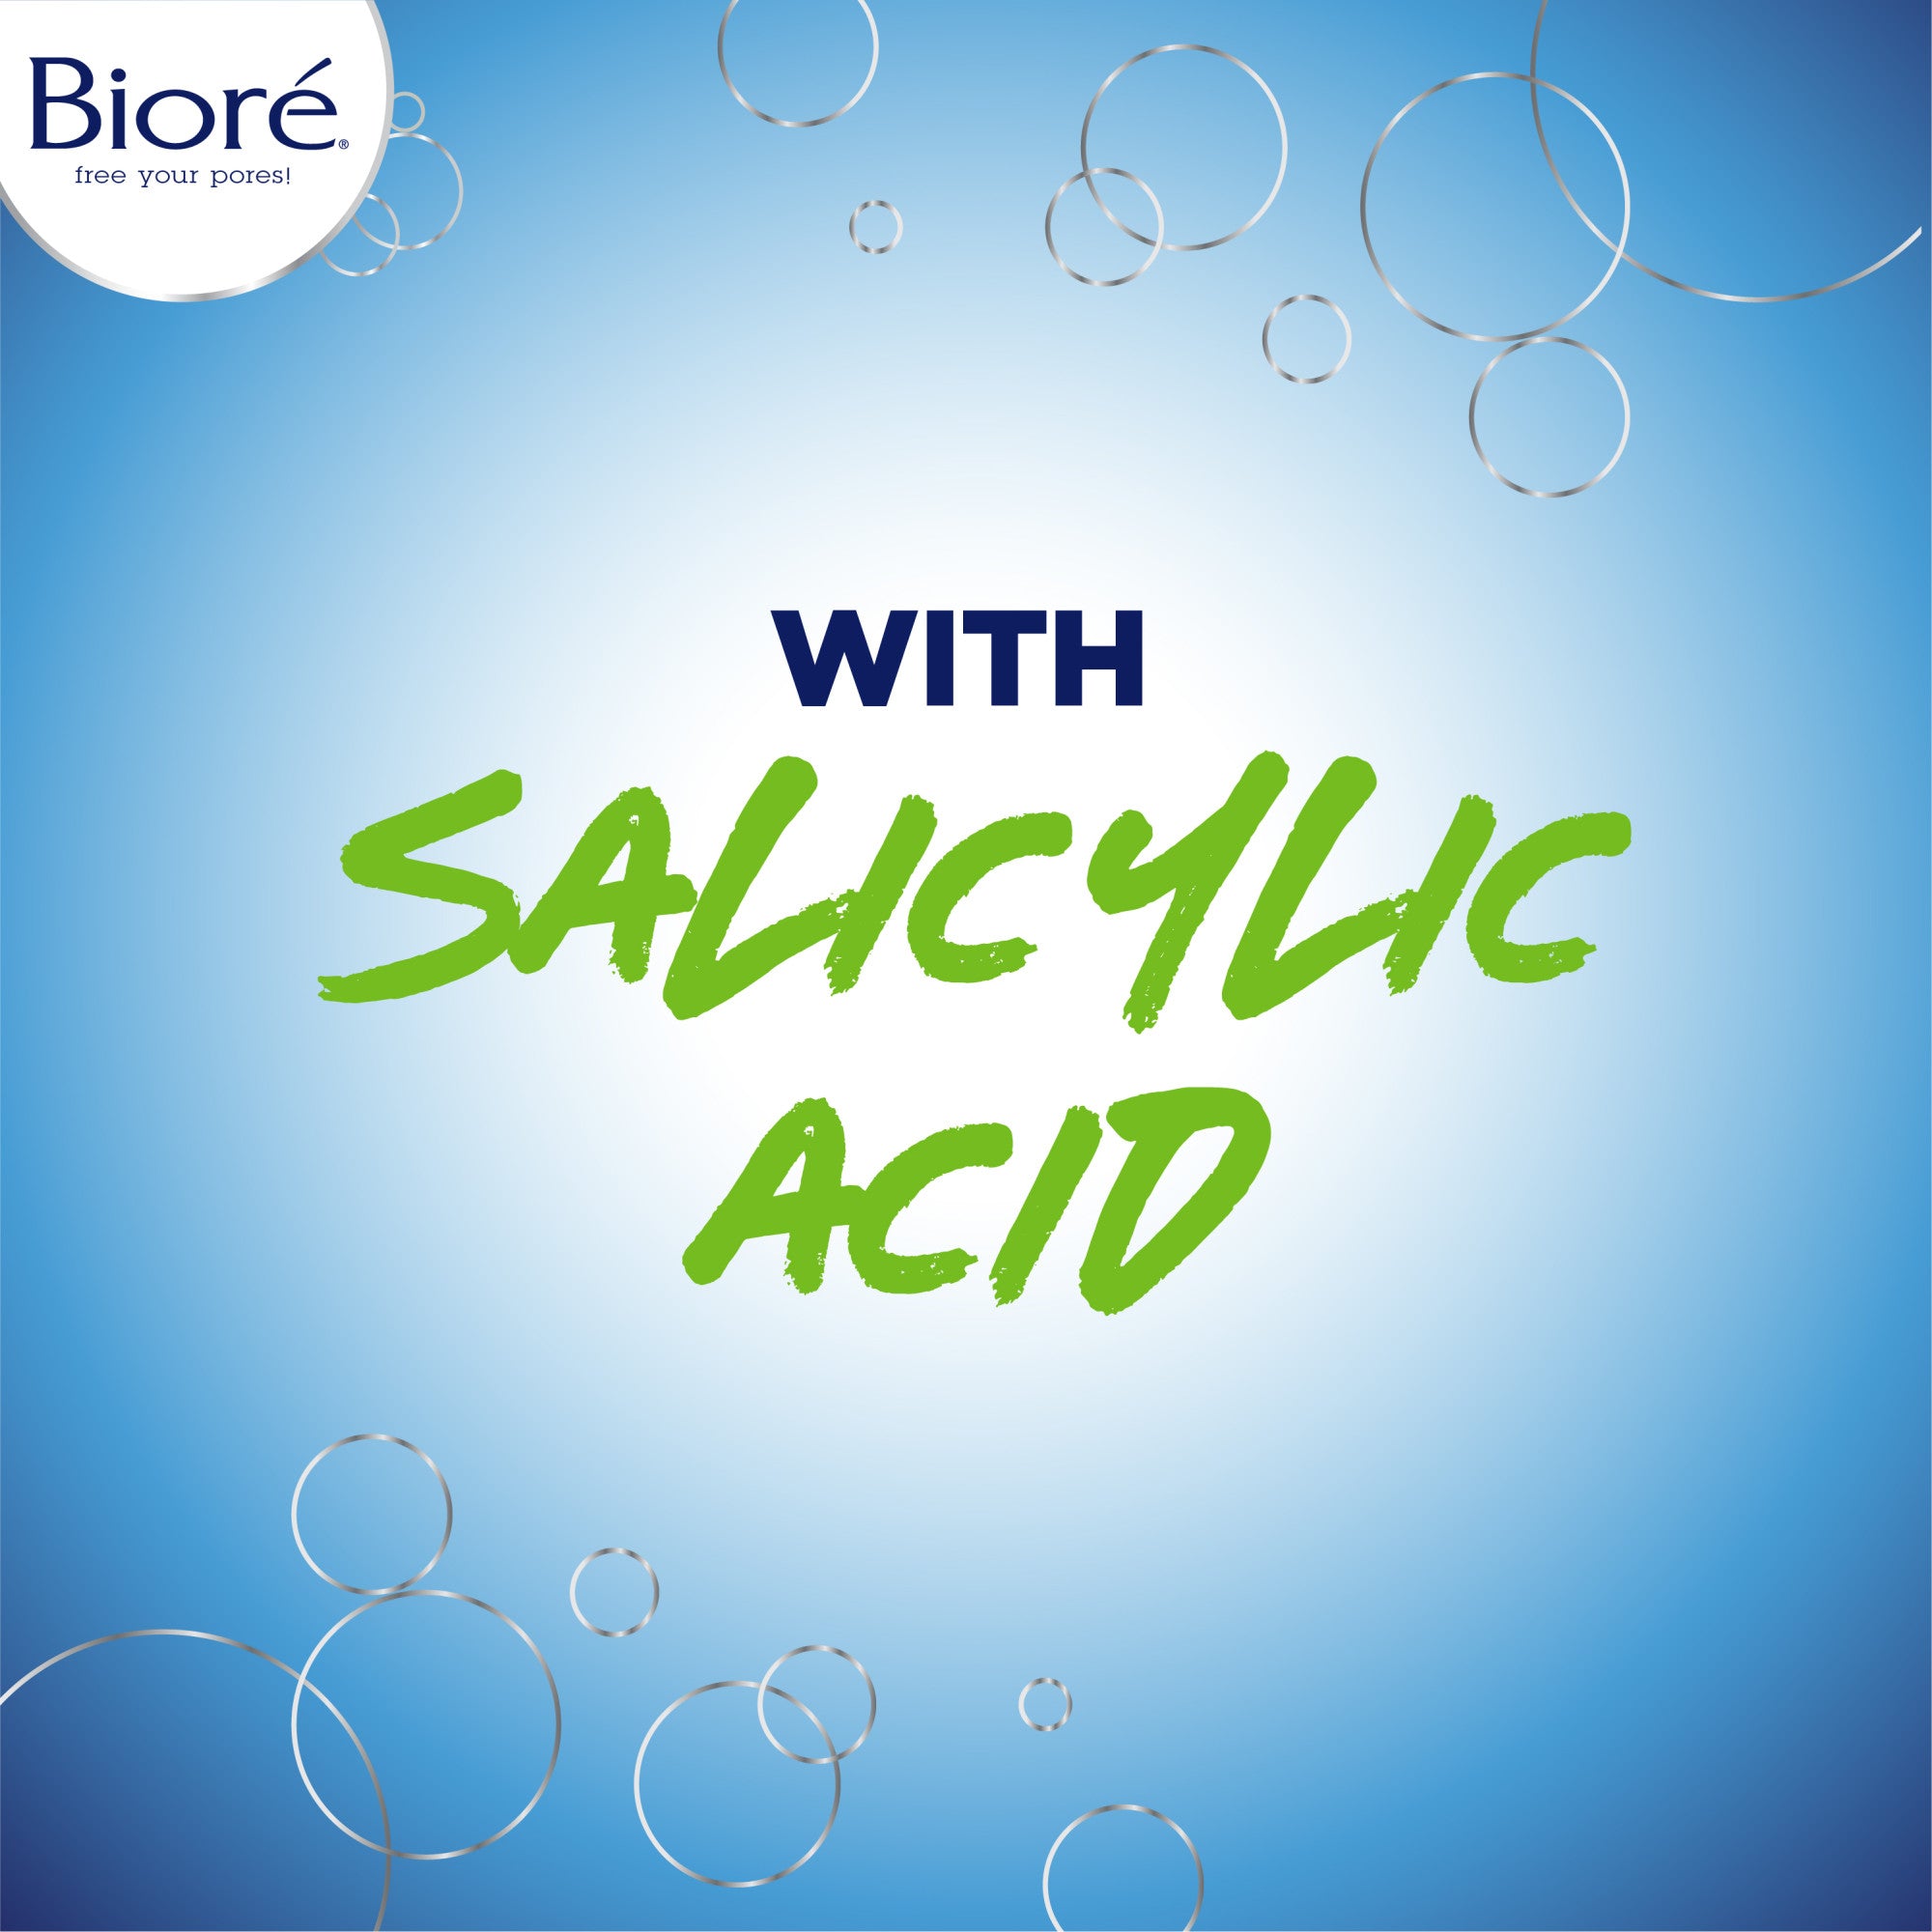 With salicylic acid.